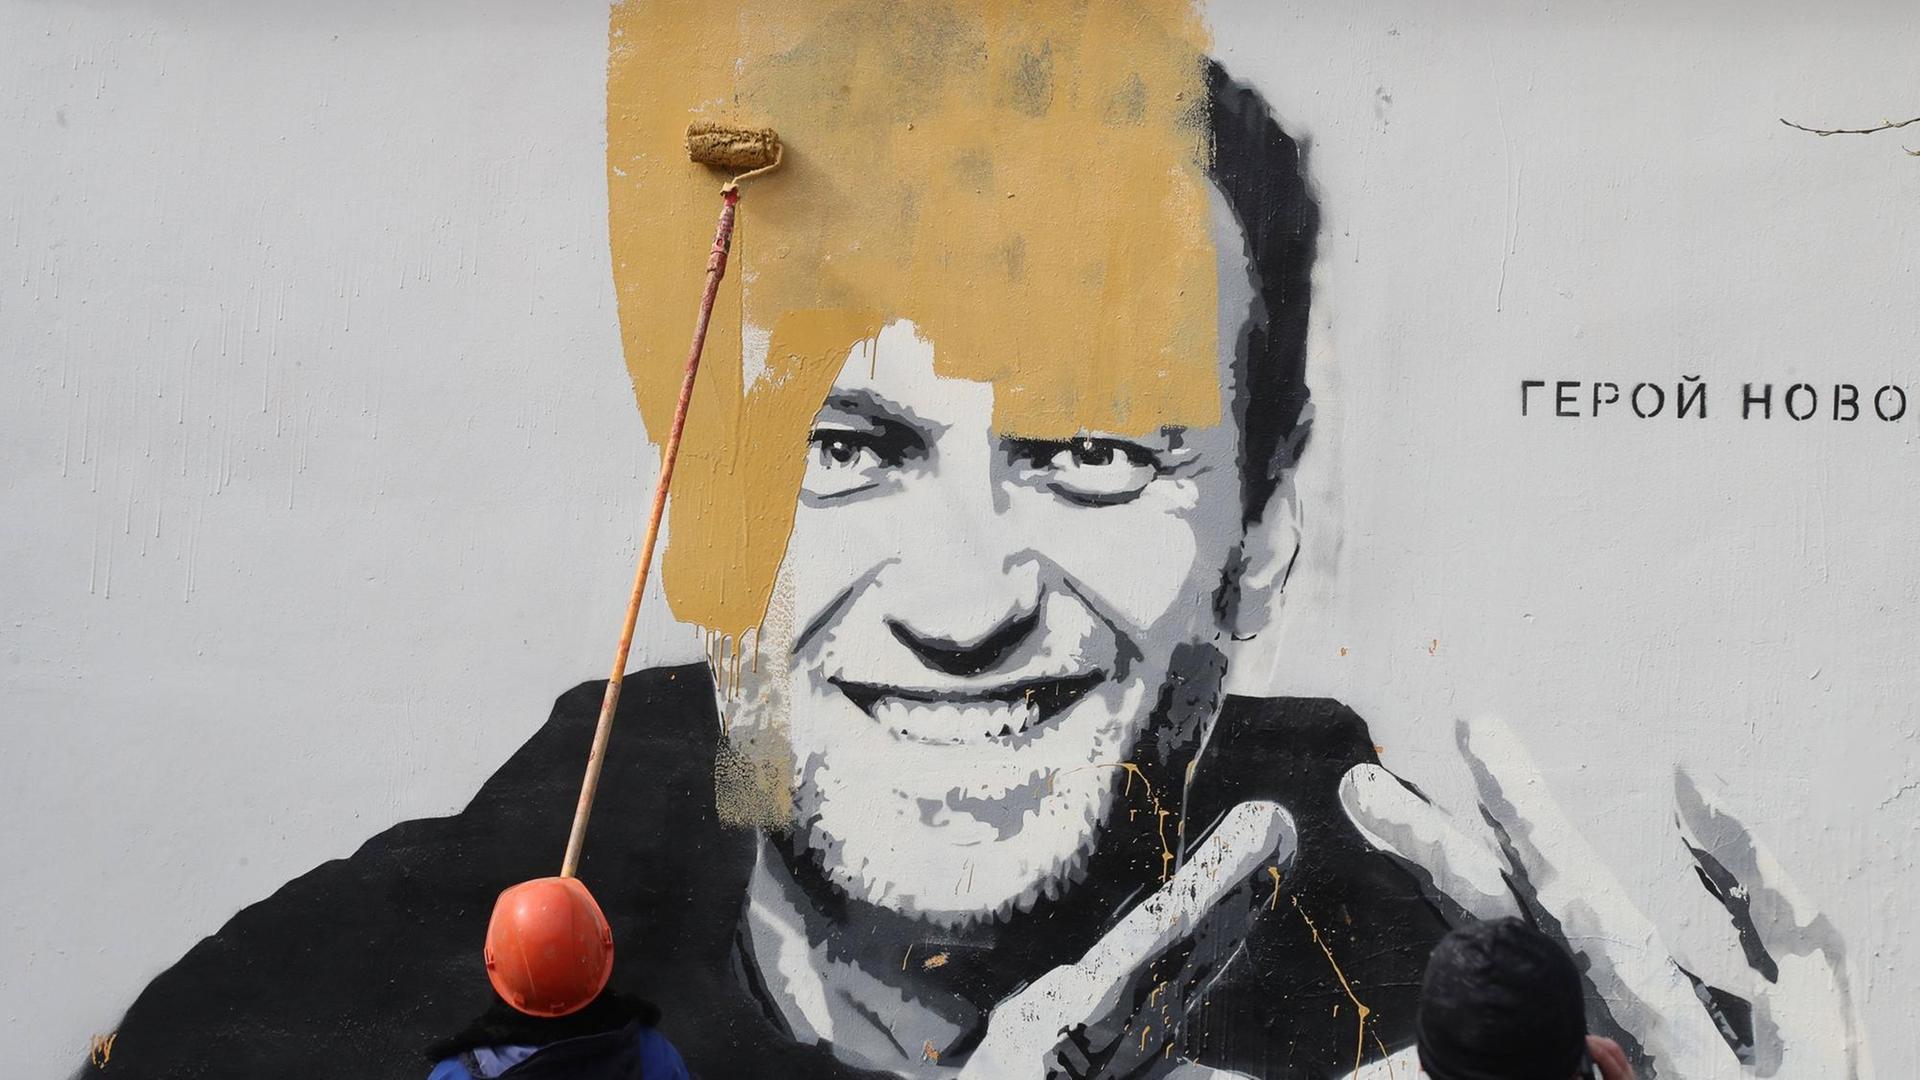 Ein Wandbild auf einem Gebäude in St. Petersburg, das den russischen Oppositionellen Alexej Nawalny zeigt mit dem Schriftzug "Der Held einer neuen Zeit", wird kurz nach seiner Entdeckung übermalt.